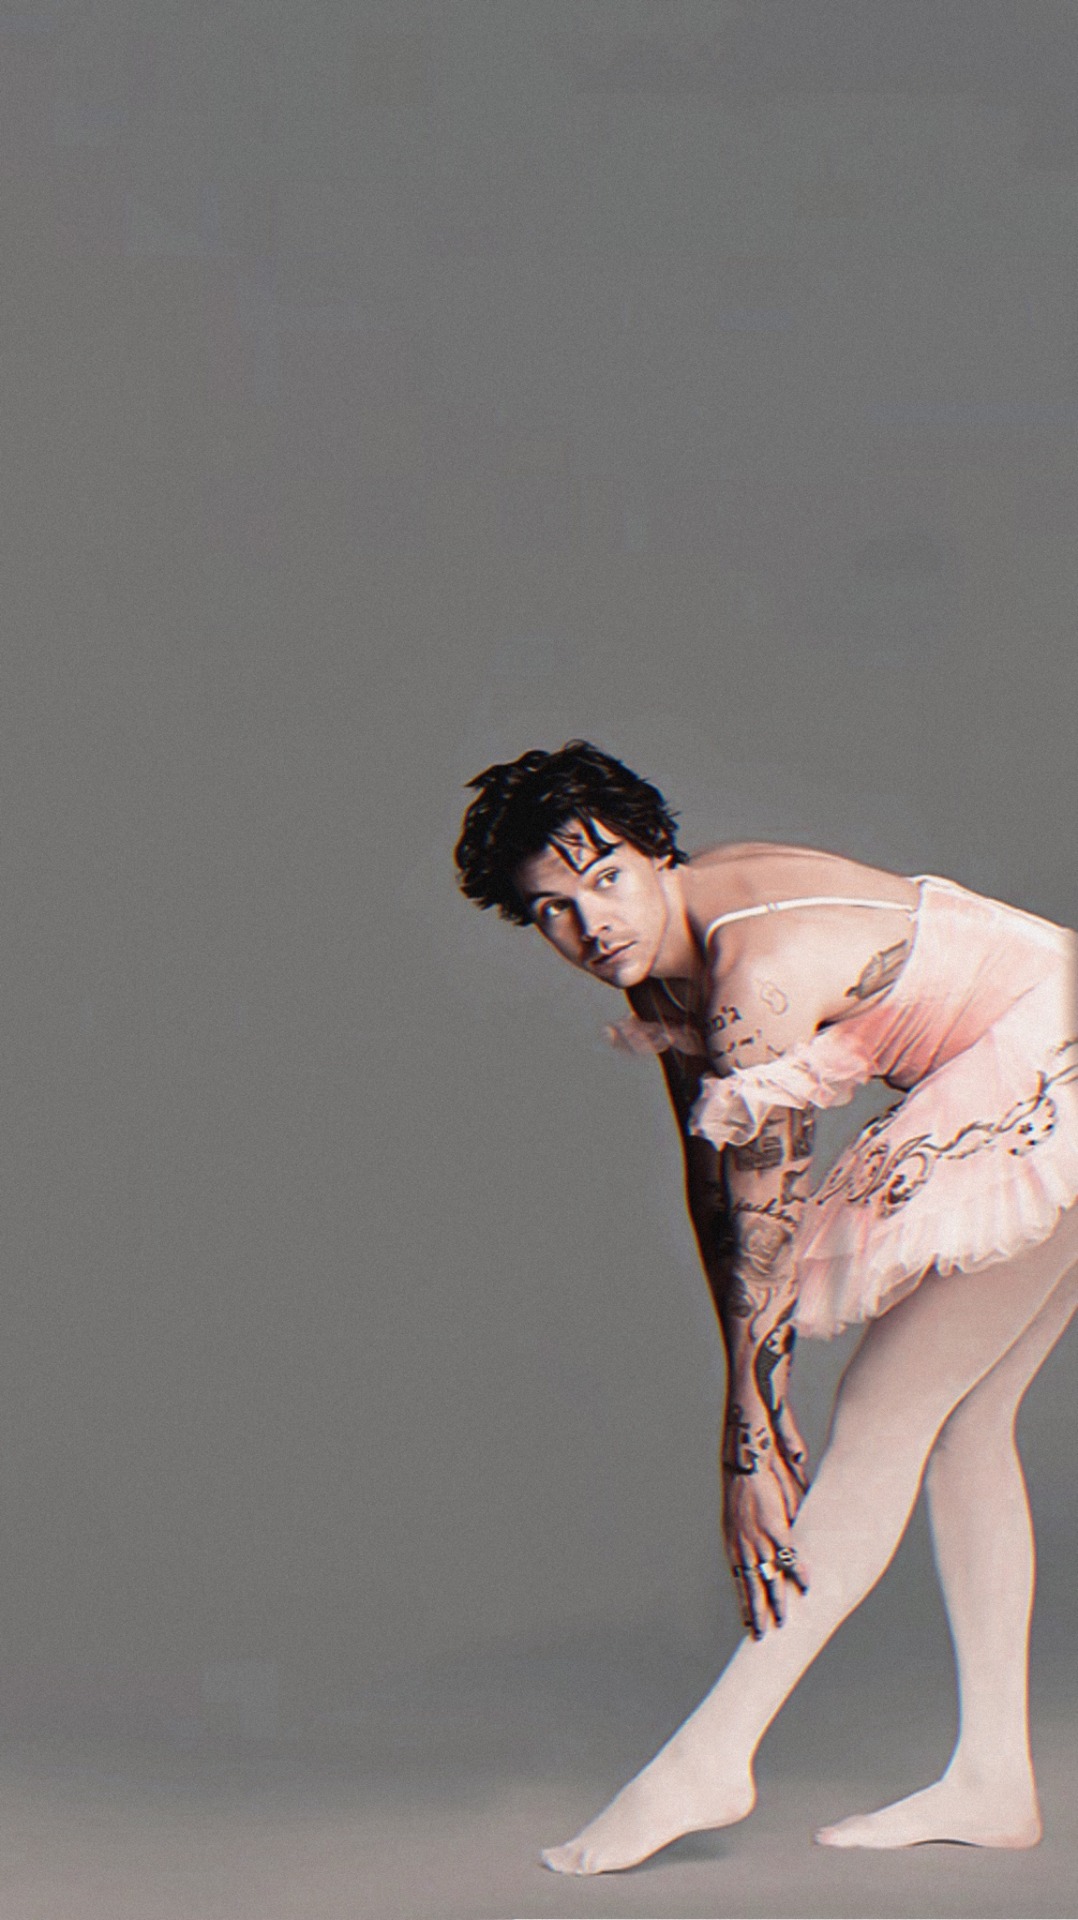  Harry styles ballet  on Tumblr